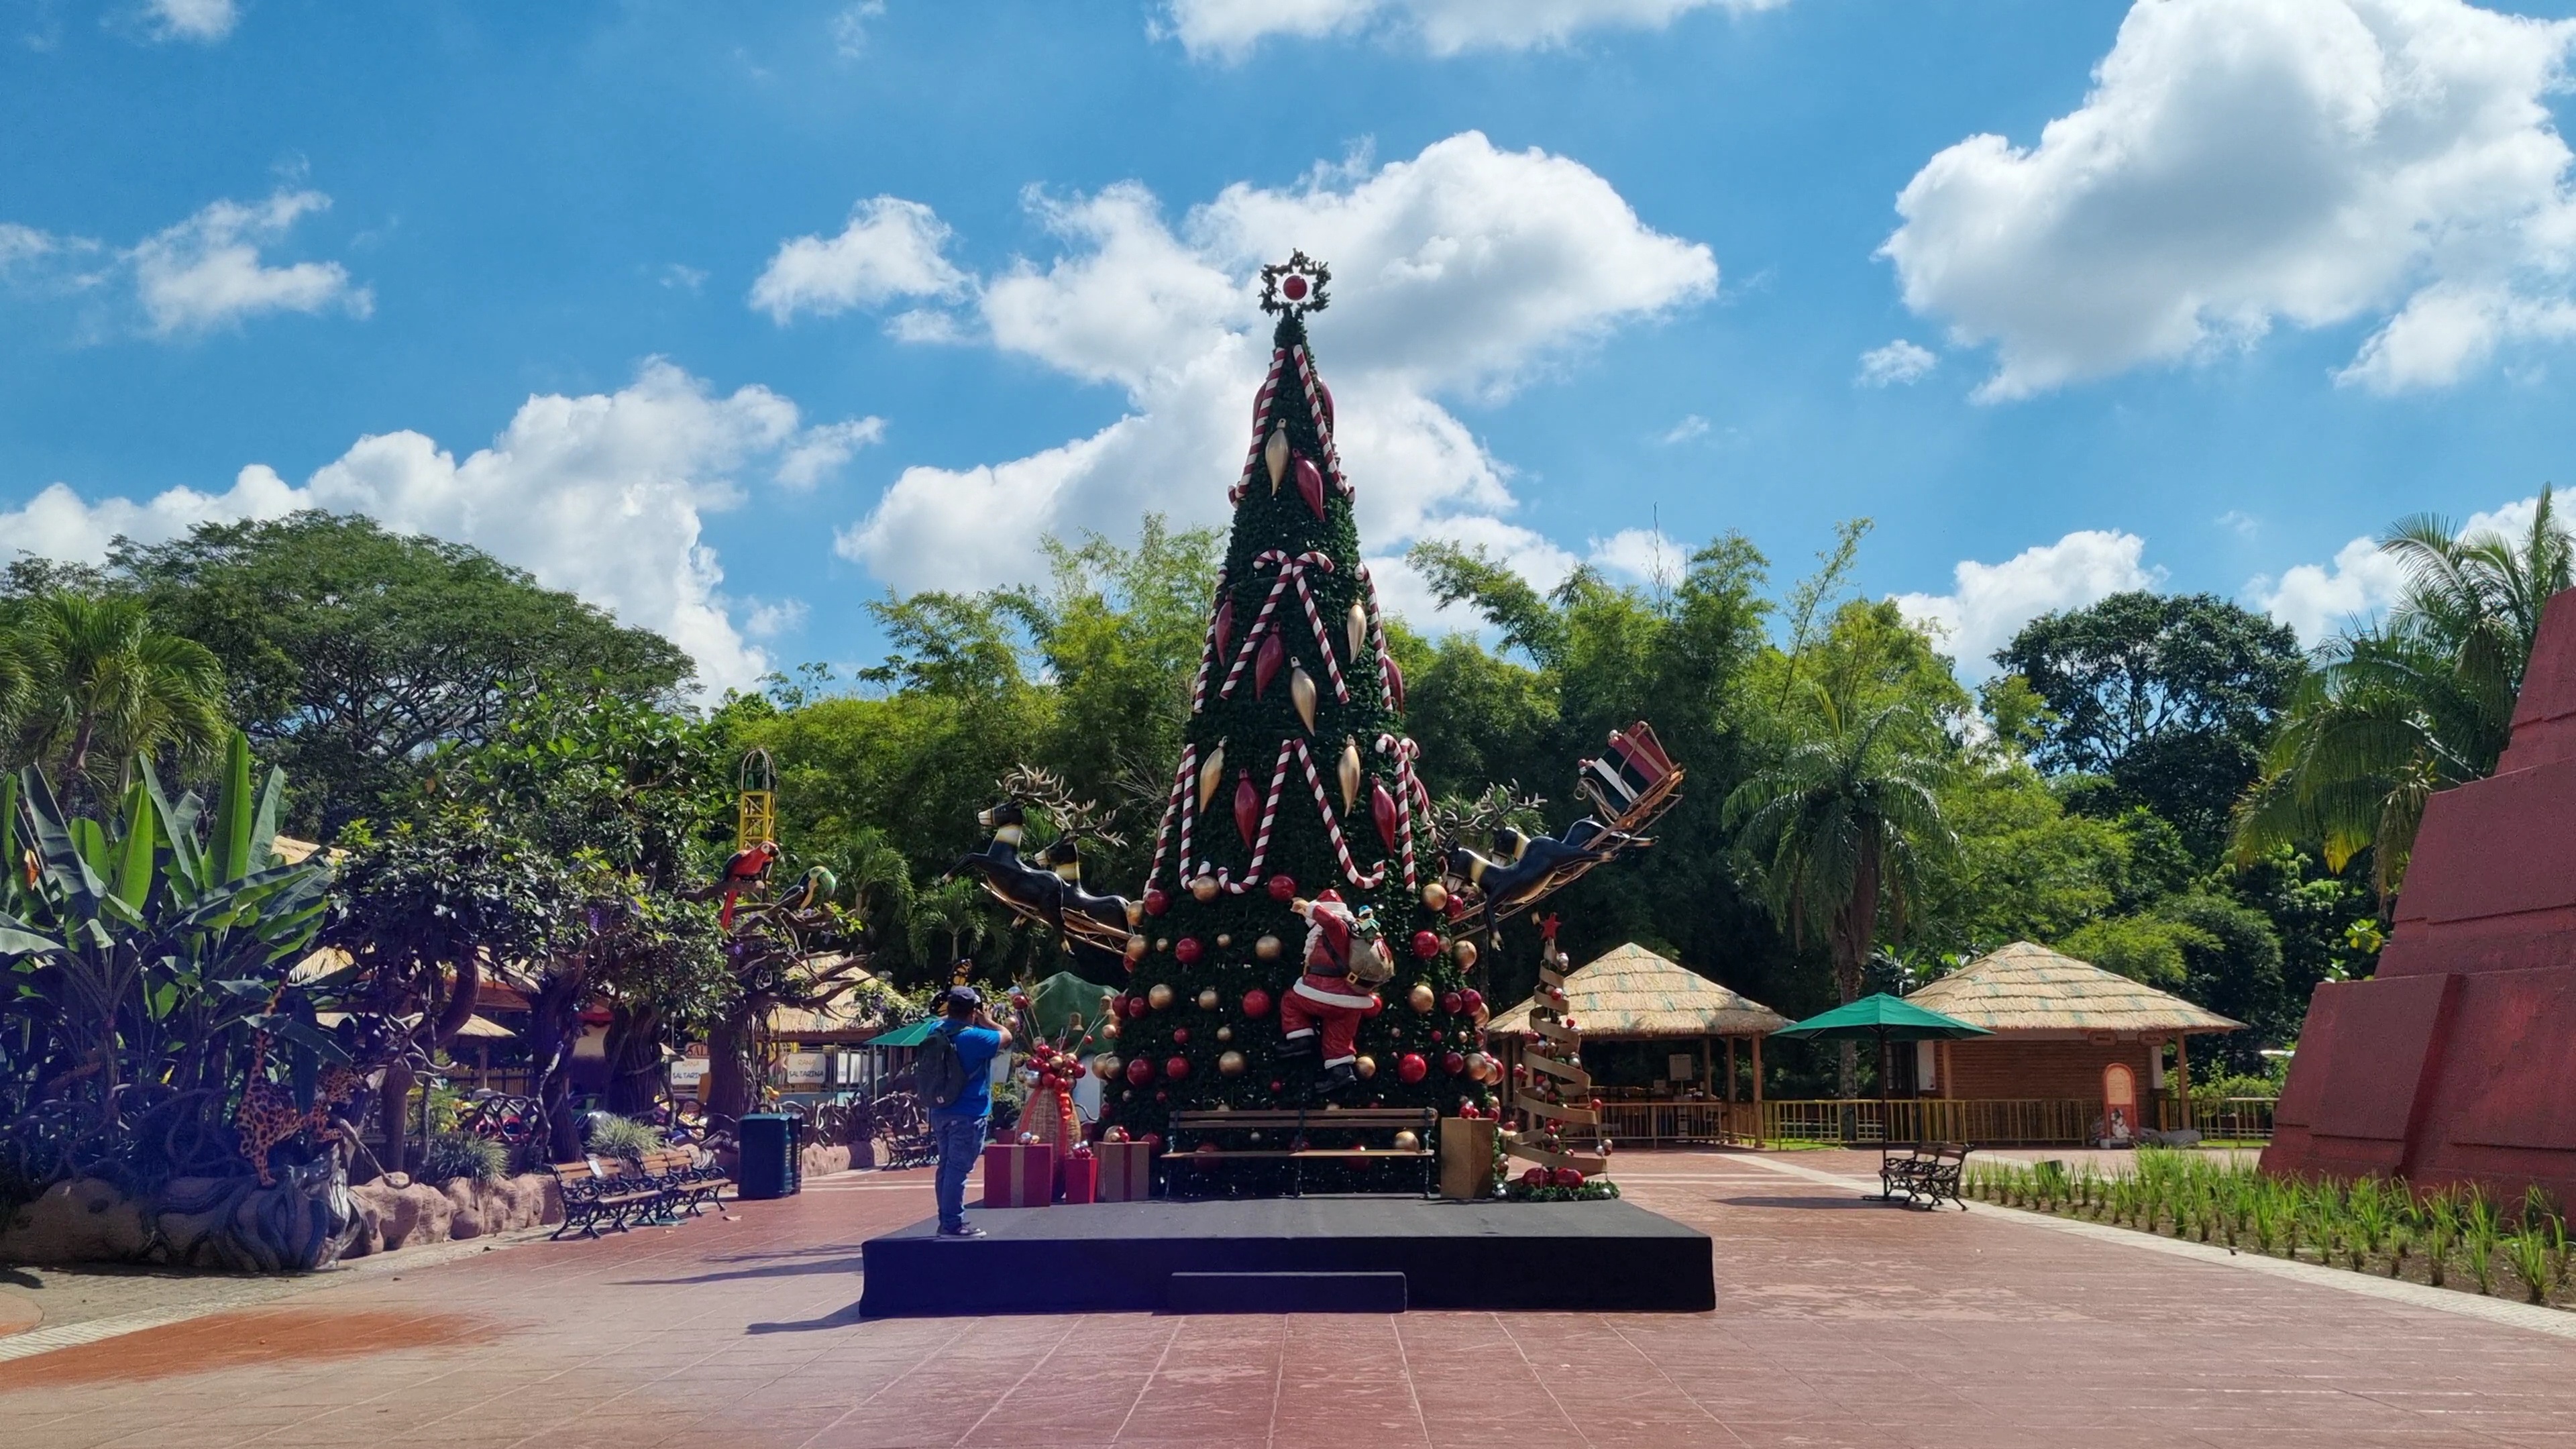 El parque temático Xetulul celebra el inicio de la Navidad este 26 de noviembre con una agenda de actividades para la familia. (Foto Prensa Libre: Victoria Ruiz)